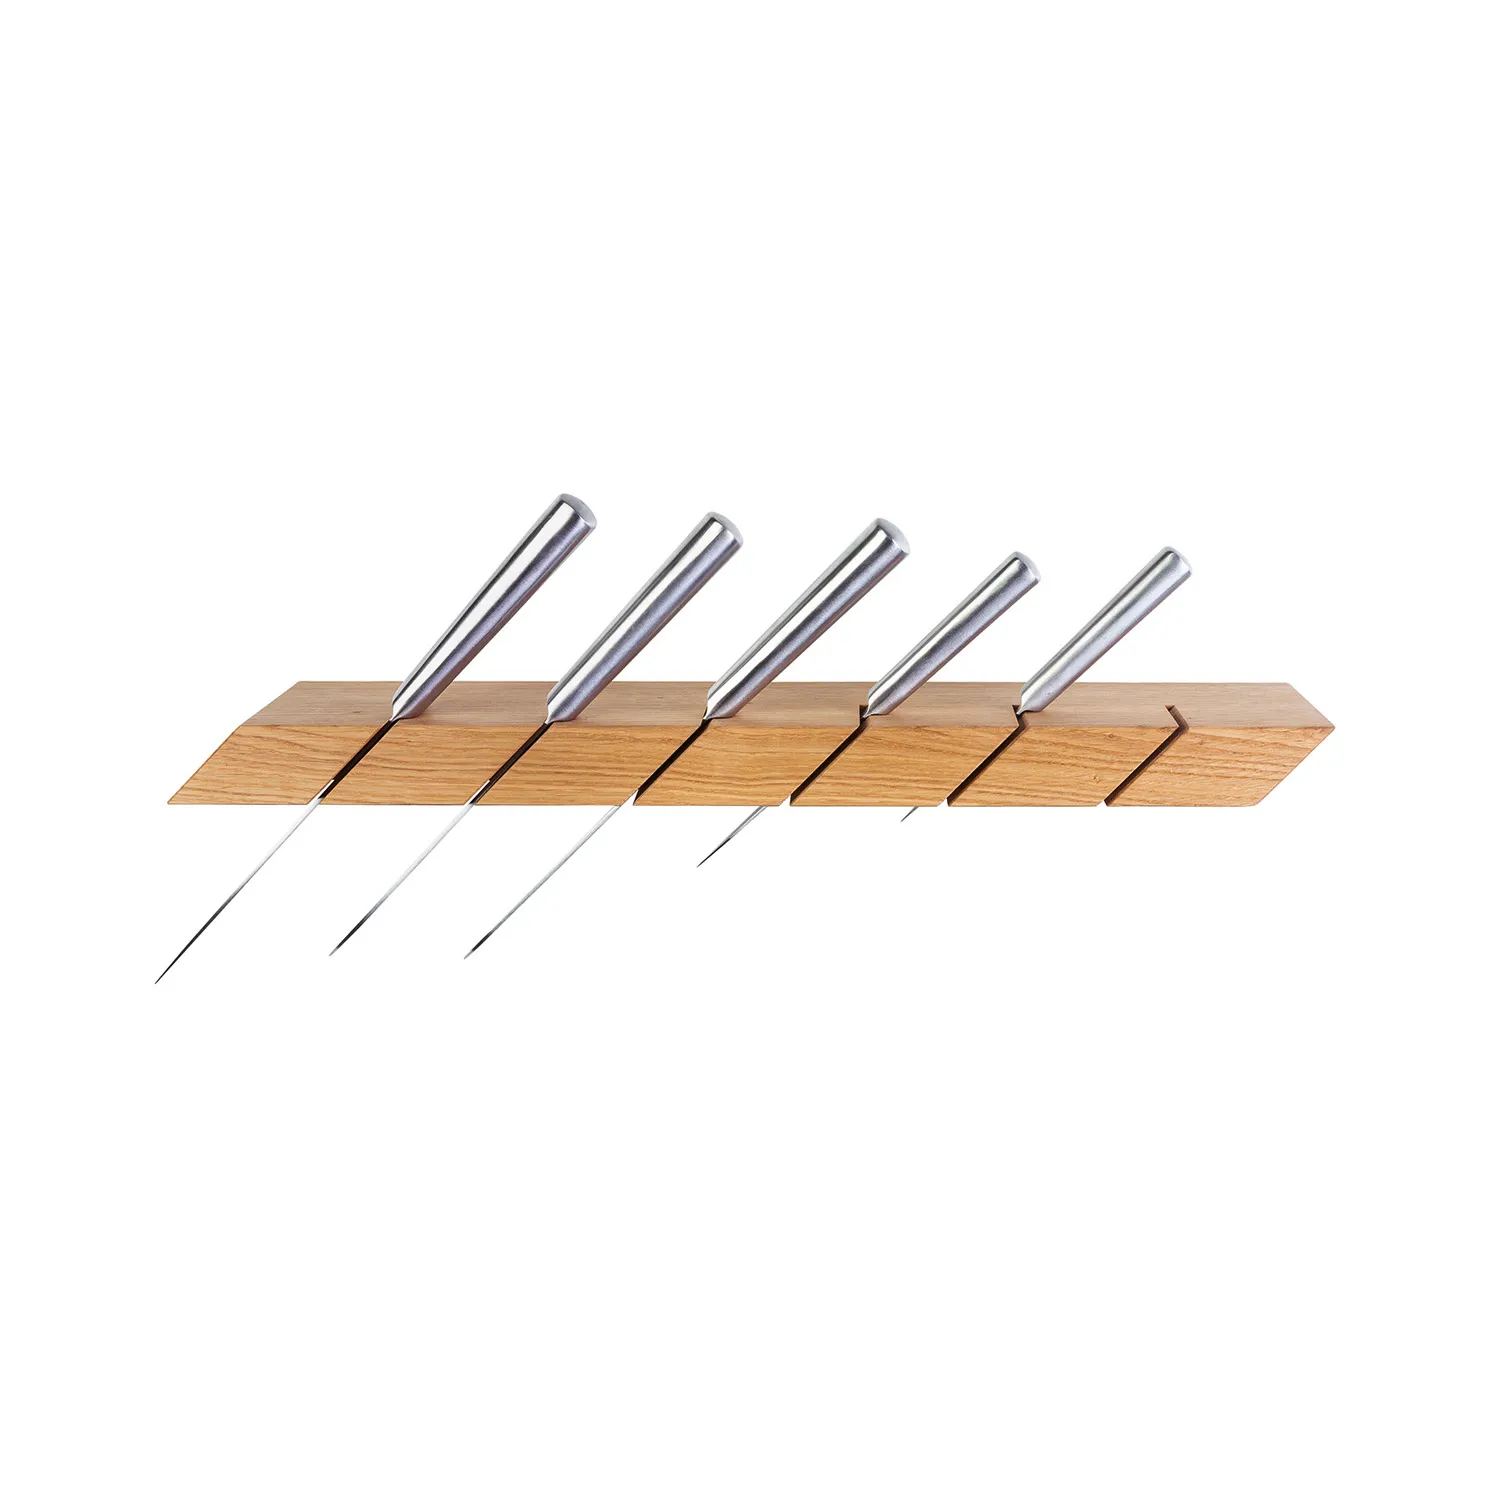 Messerhalter aus Holz mit Messern aus Stahl von oben